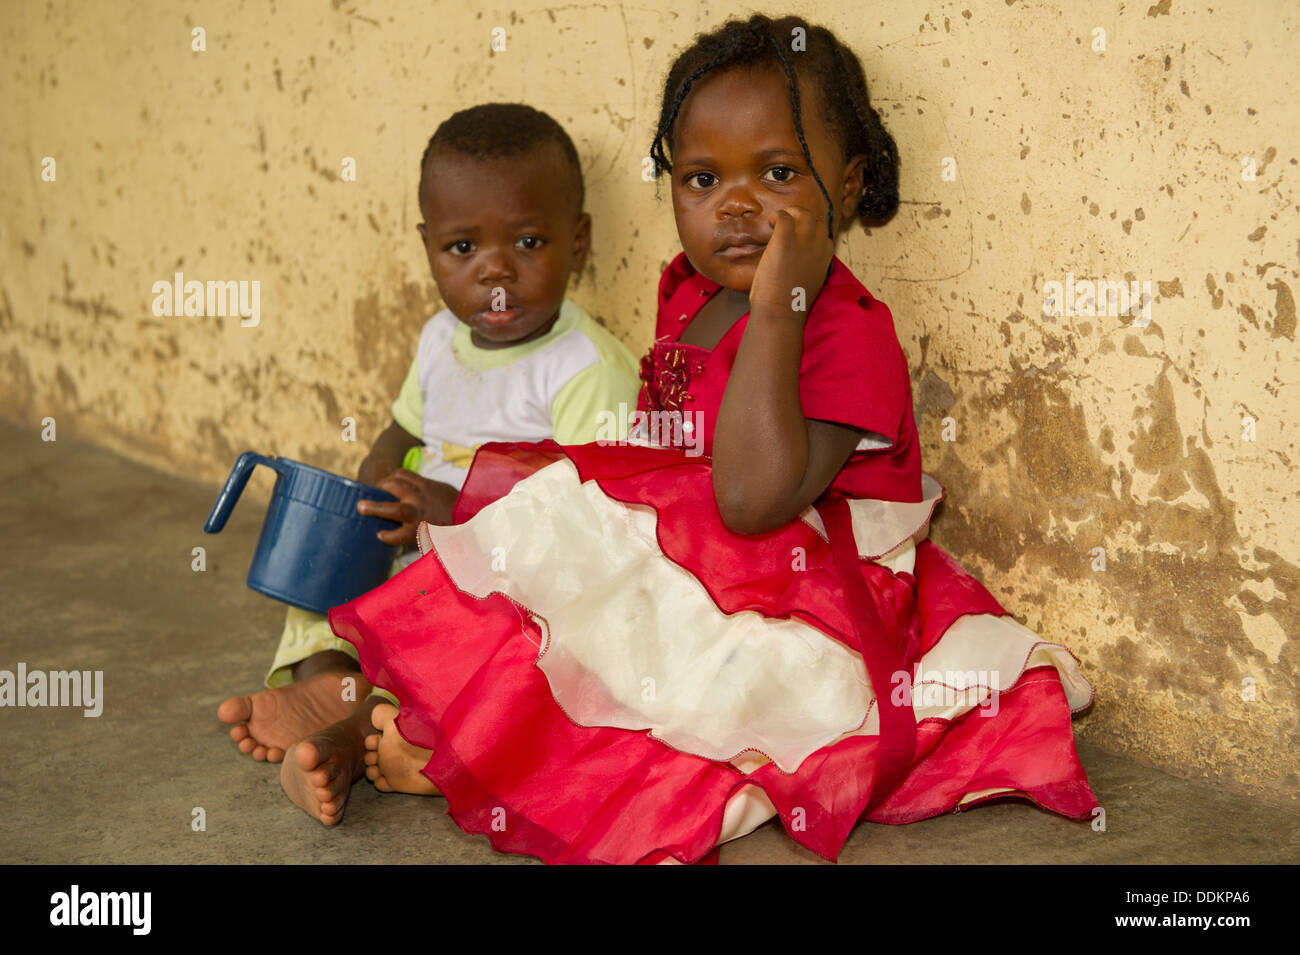 Les enfants d'Afrique noire sur le plancher au Nigeria Banque D'Images